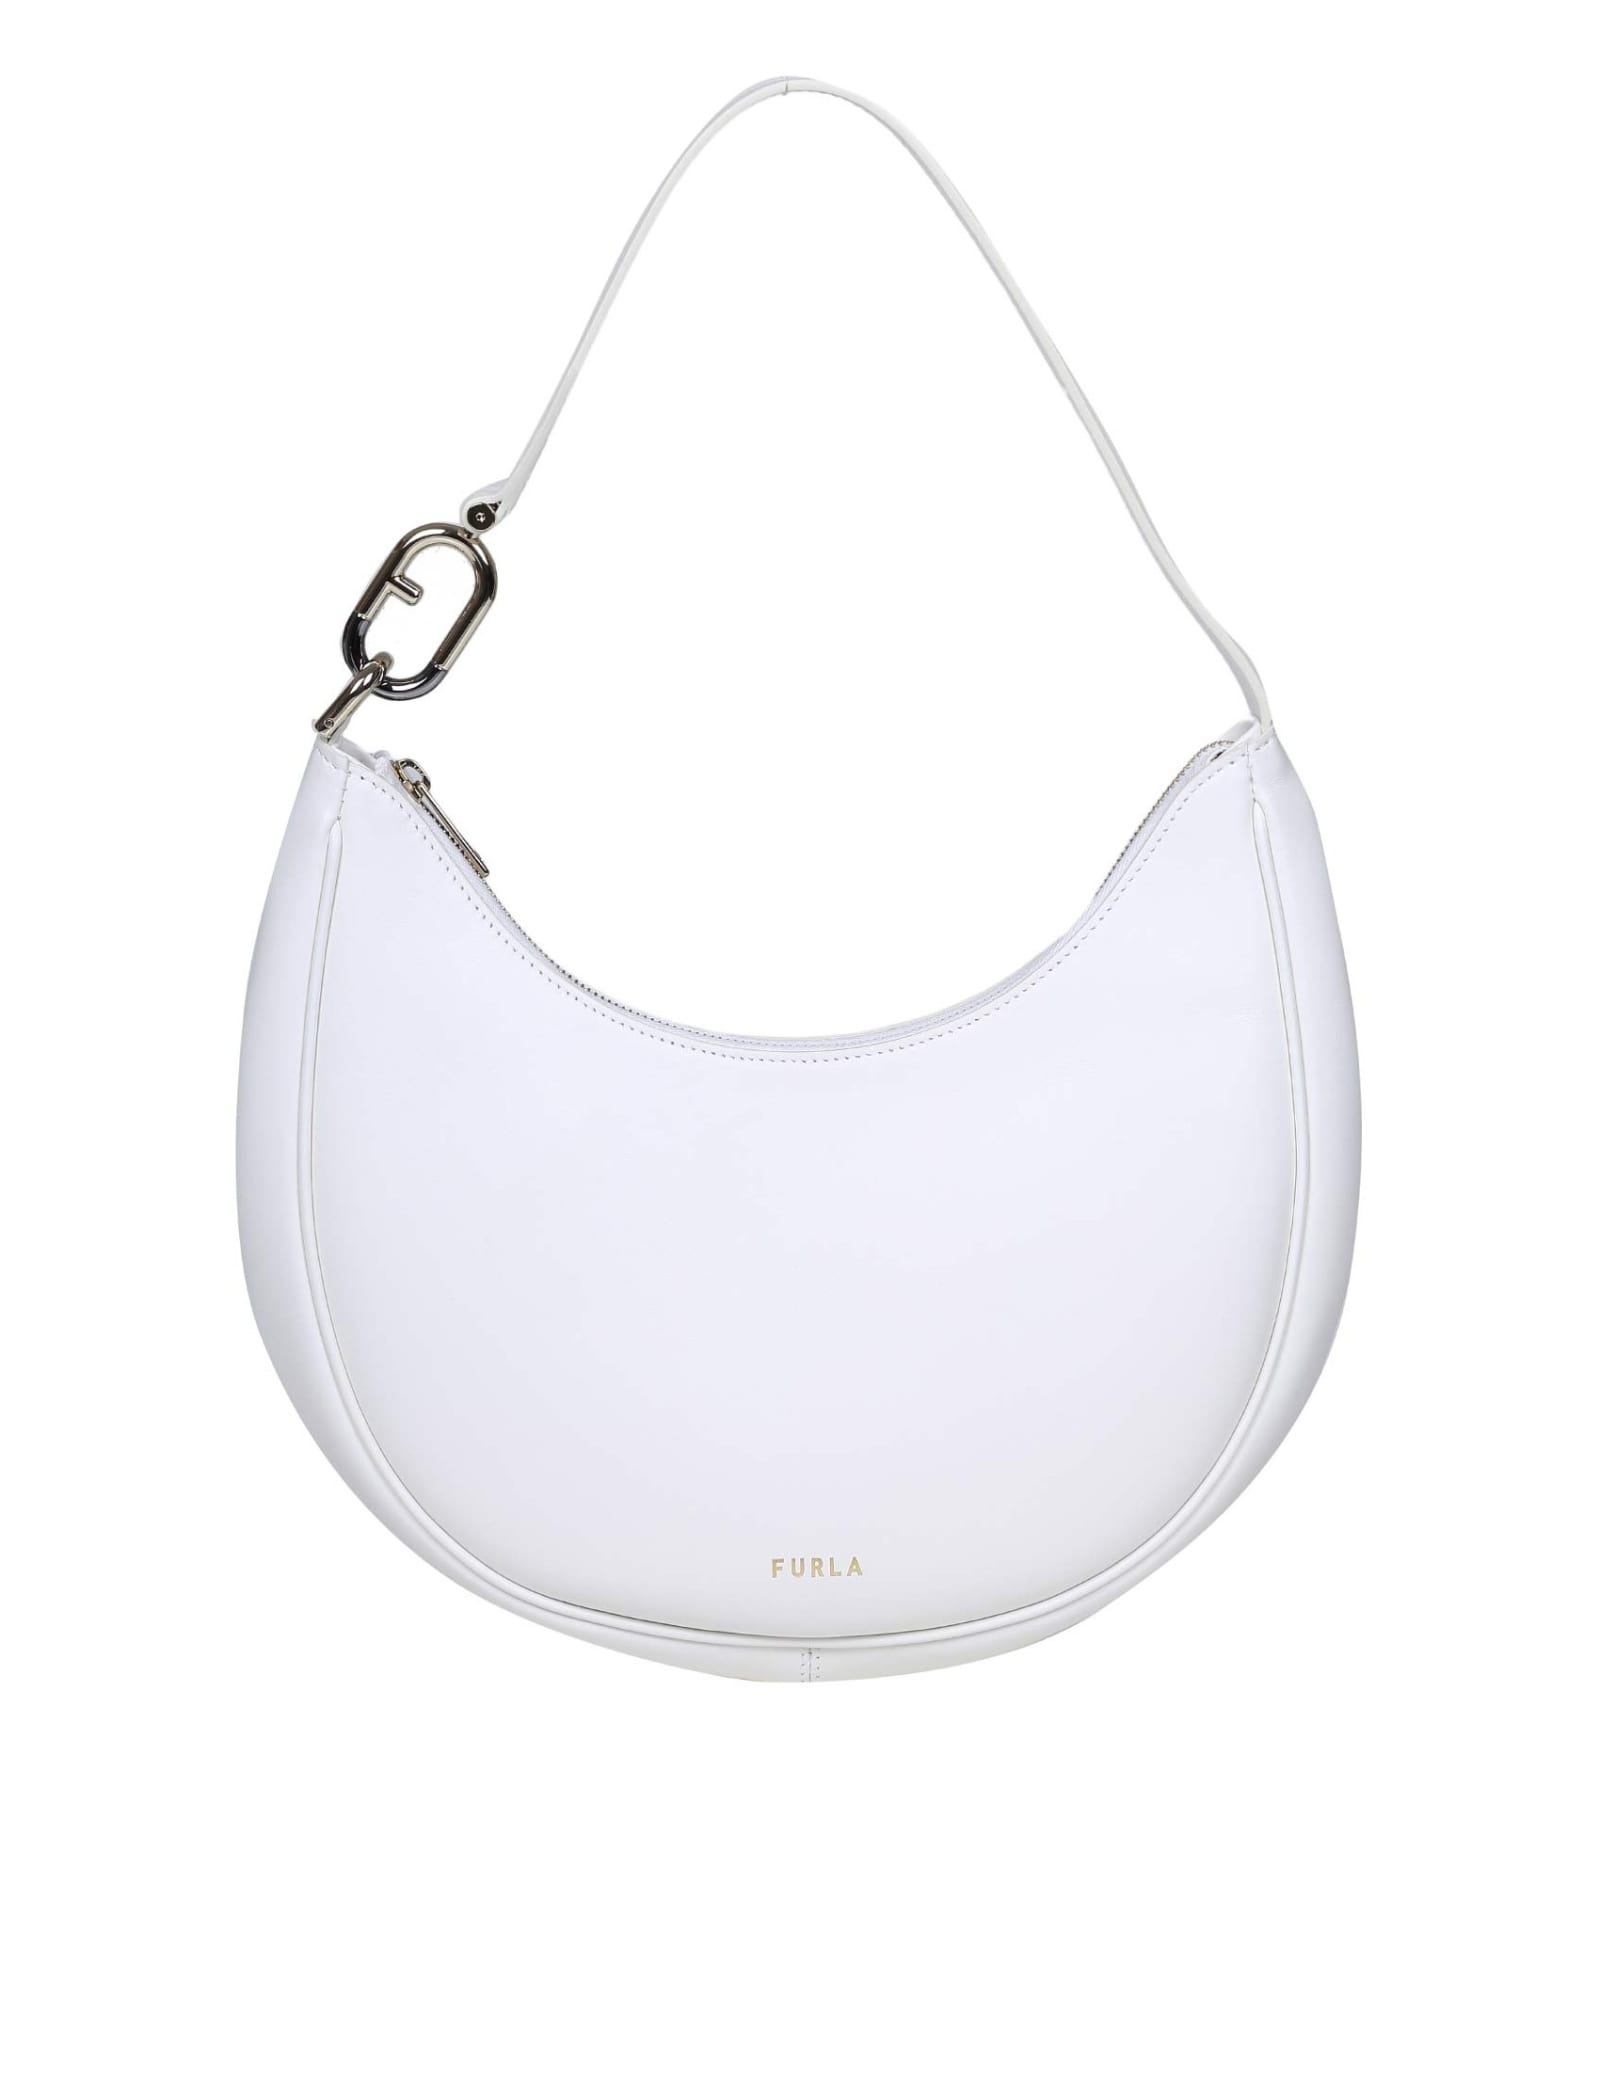 Furla Spring M Shoulder Bag In White Leather